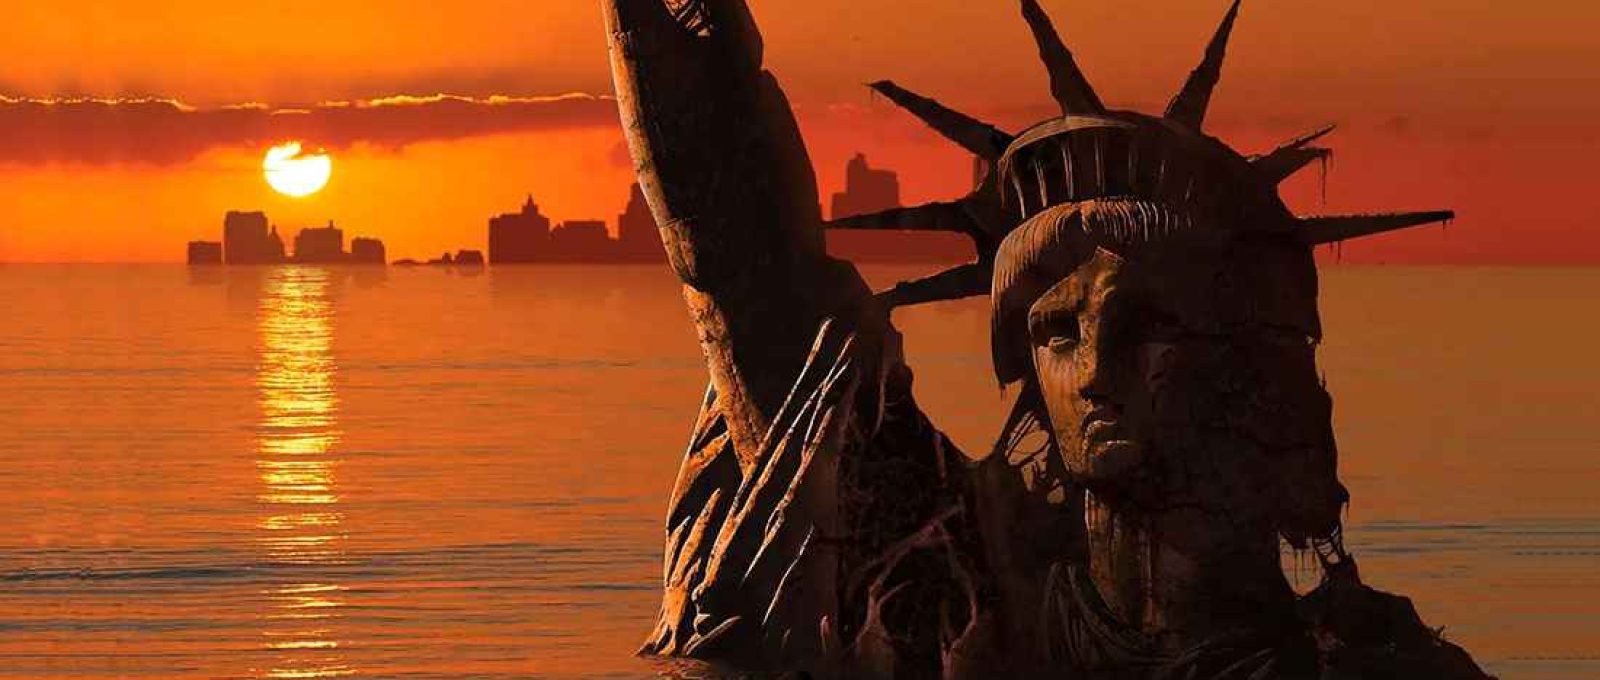 Ilustração da Estátua da Liberdade e Nova York inundadas e em ruínas (Getty Images).